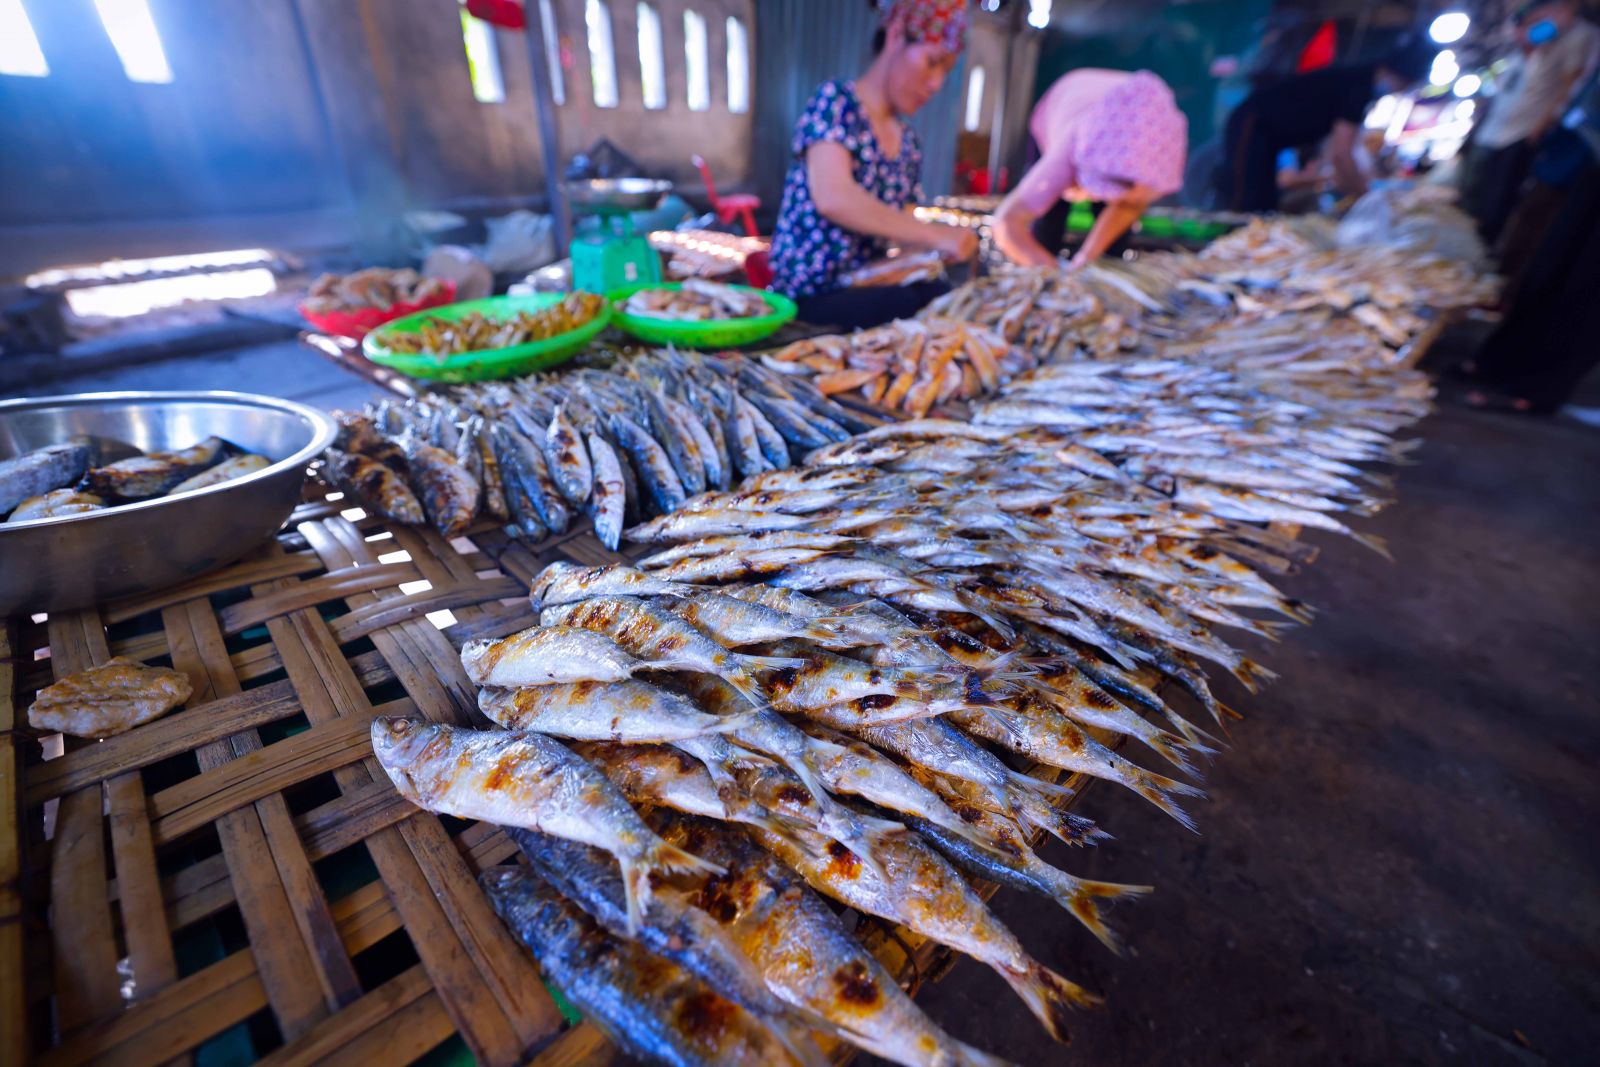 Mặc nắng nóng gay gắt, cháy rát mùa hè, những người phụ nữ ở các phiên chợ quê xứ Nghệ vẫn kiên trì ngồi bên bếp than đỏ lửa, canh từng mẻ cá nướng.